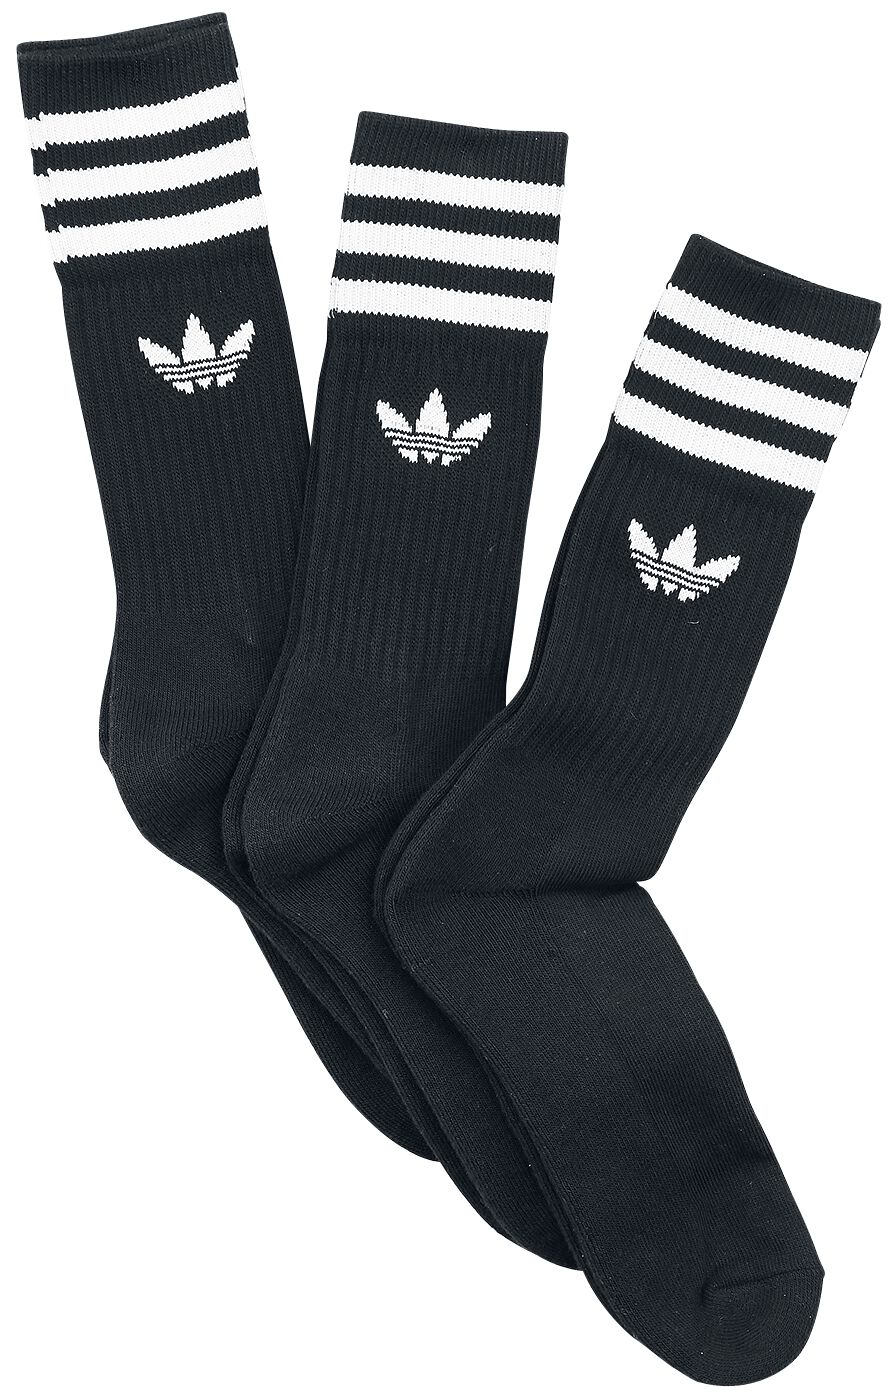 Solid Crew Sock 3 Pack Socken schwarz/weiß von Adidas